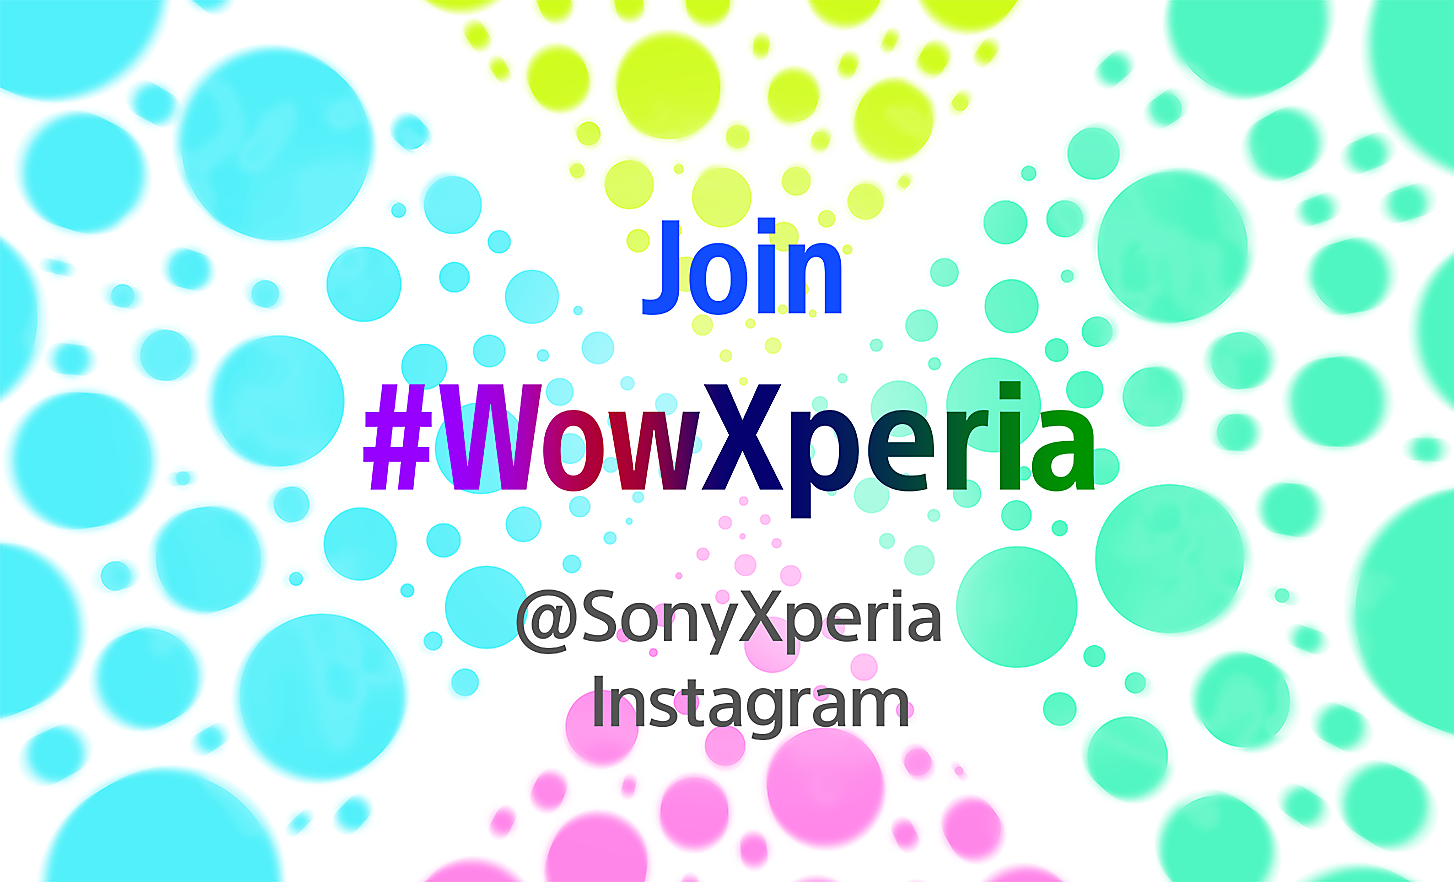 Immagine di uno sfondo bianco con bolle colorate e tag social in sovraimpressione su come partecipare a Wow con Xperia